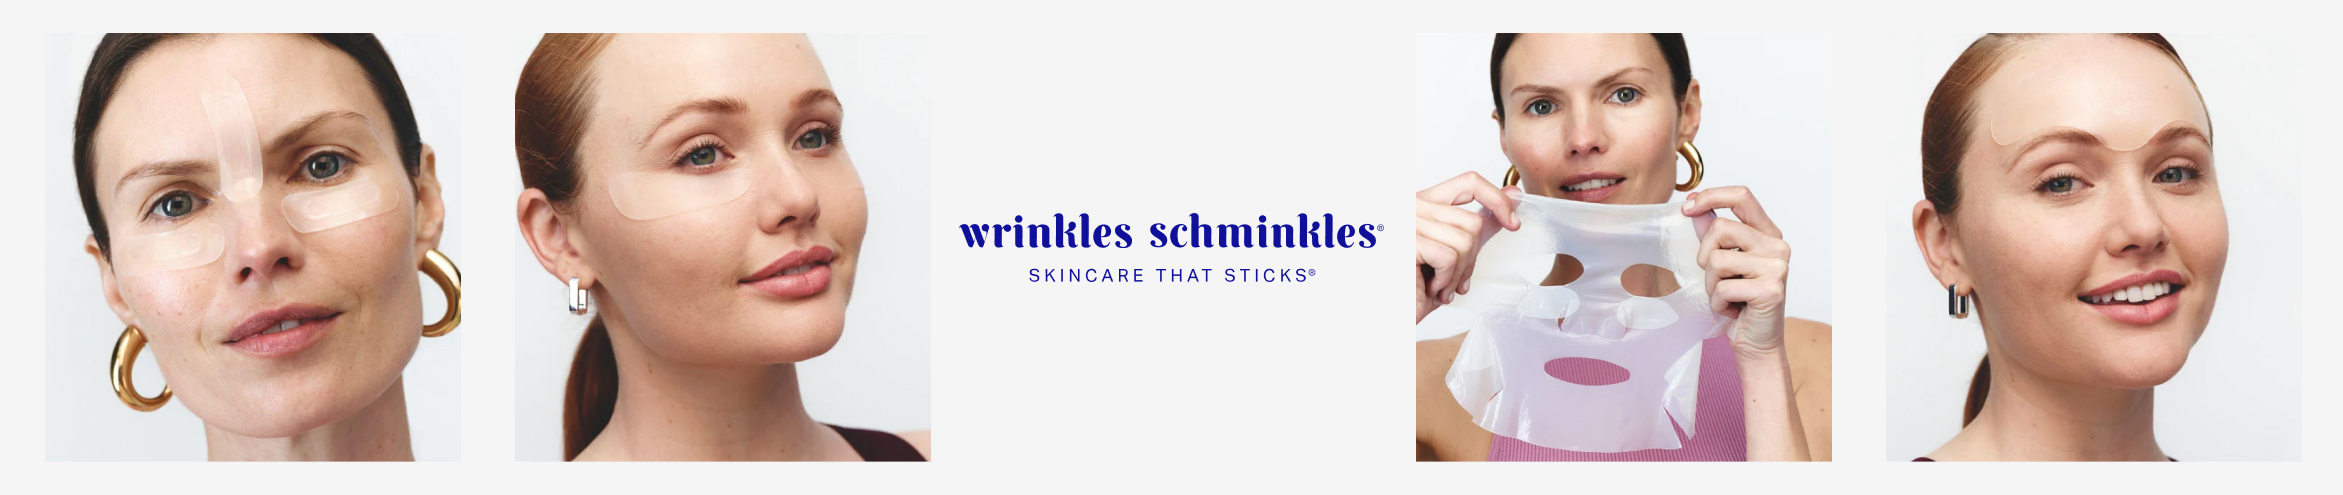 Wrinkles Schminkles - Lifestyle